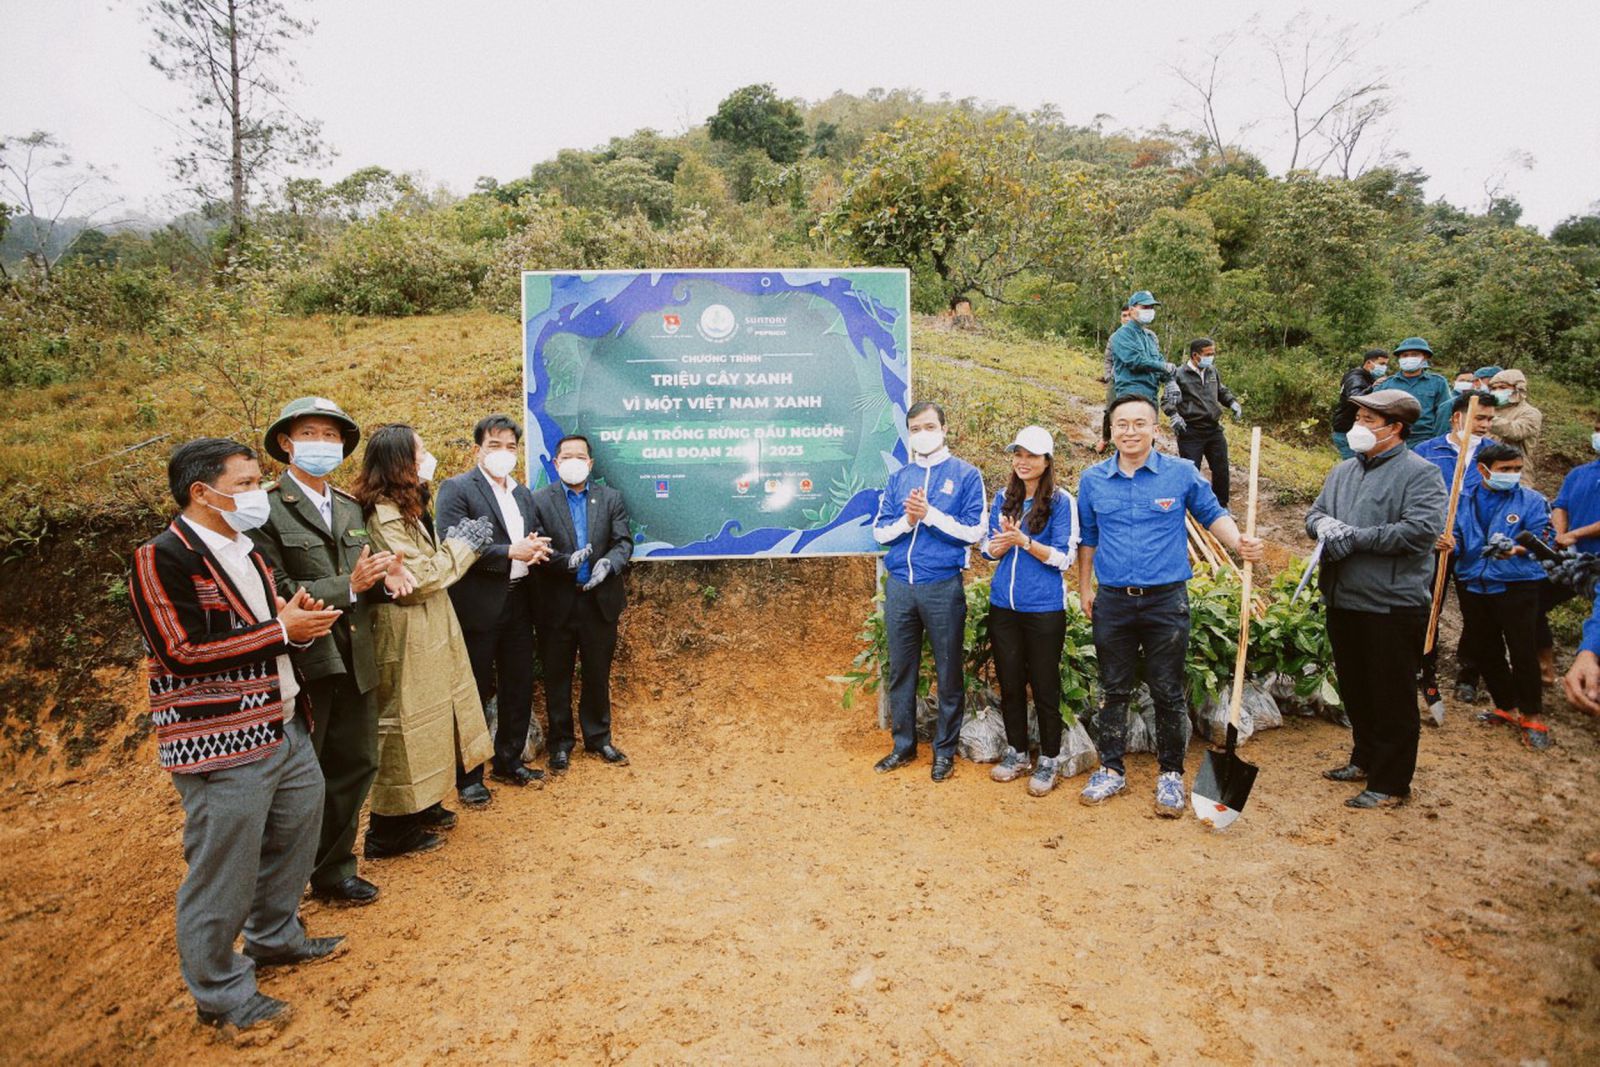 Lễ tổng kết chương trình “Triệu cây xanh – Vì một Việt Nam xanh” năm 2021 ở ngay hiện trường miền Trung